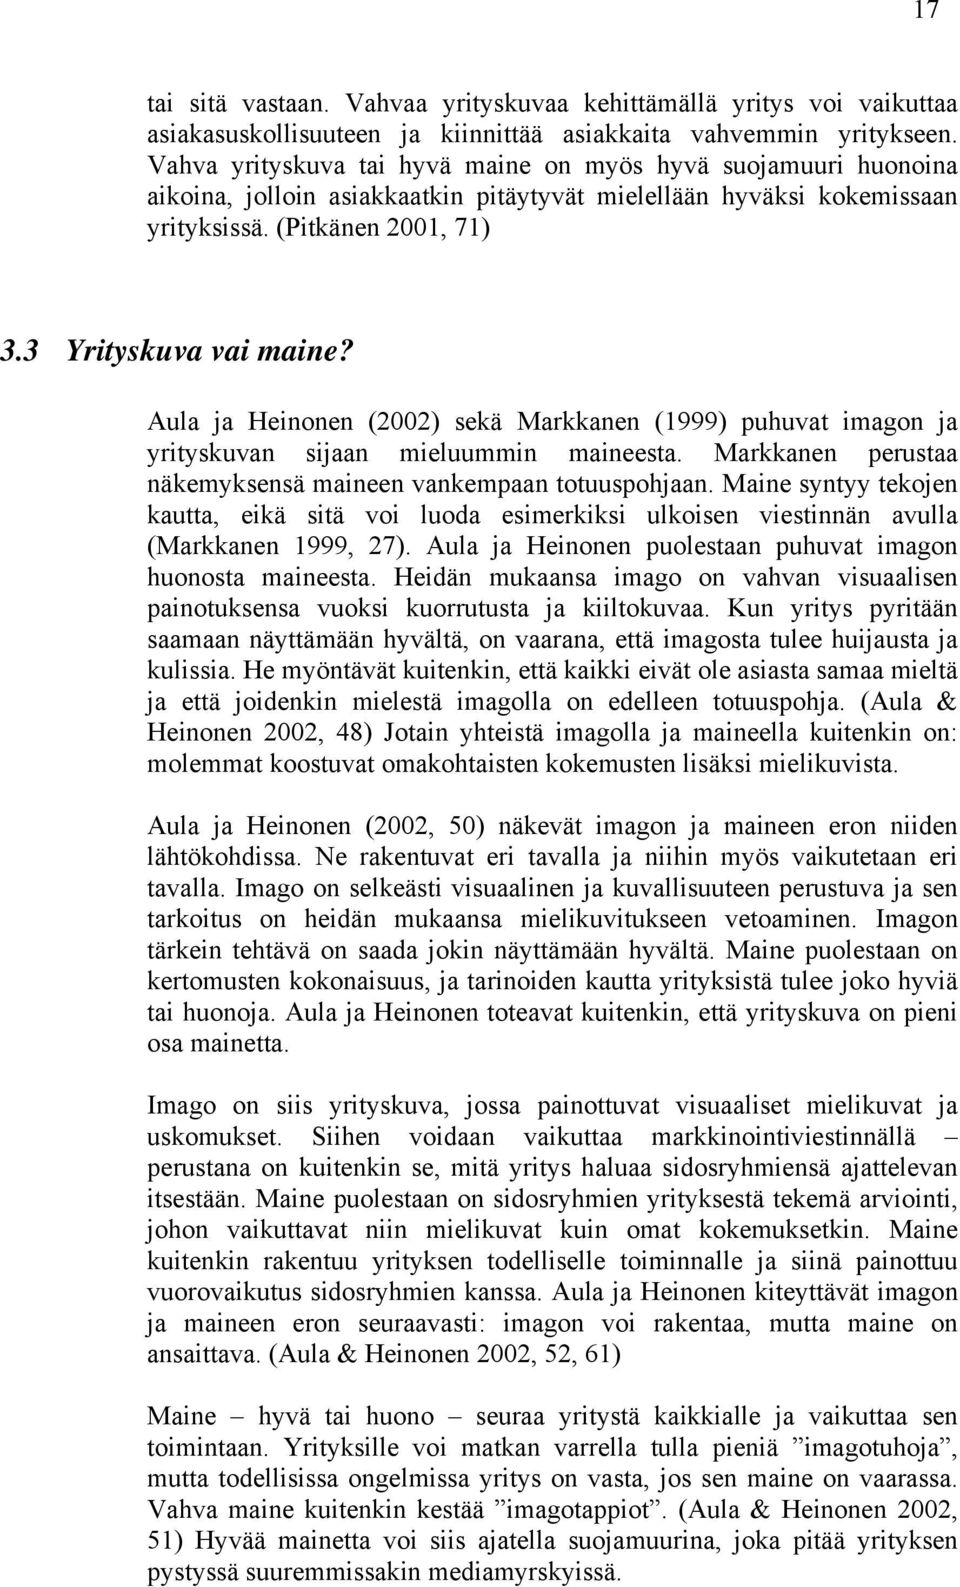 Aula ja Heinonen (2002) sekä Markkanen (1999) puhuvat imagon ja yrityskuvan sijaan mieluummin maineesta. Markkanen perustaa näkemyksensä maineen vankempaan totuuspohjaan.